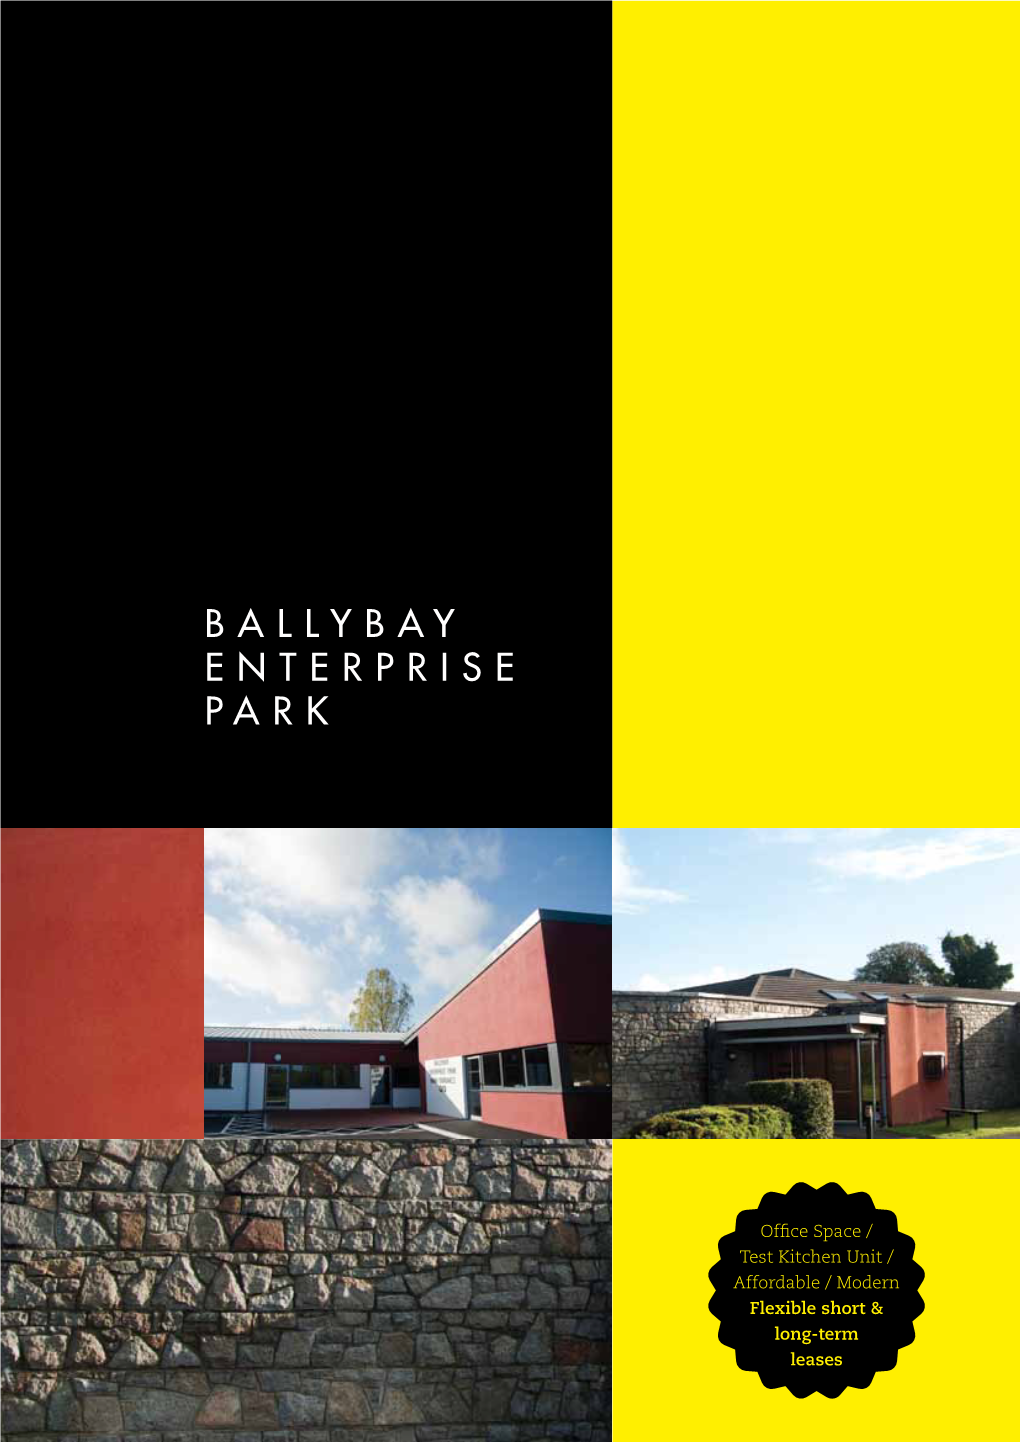 Ballybay Enterprise Park